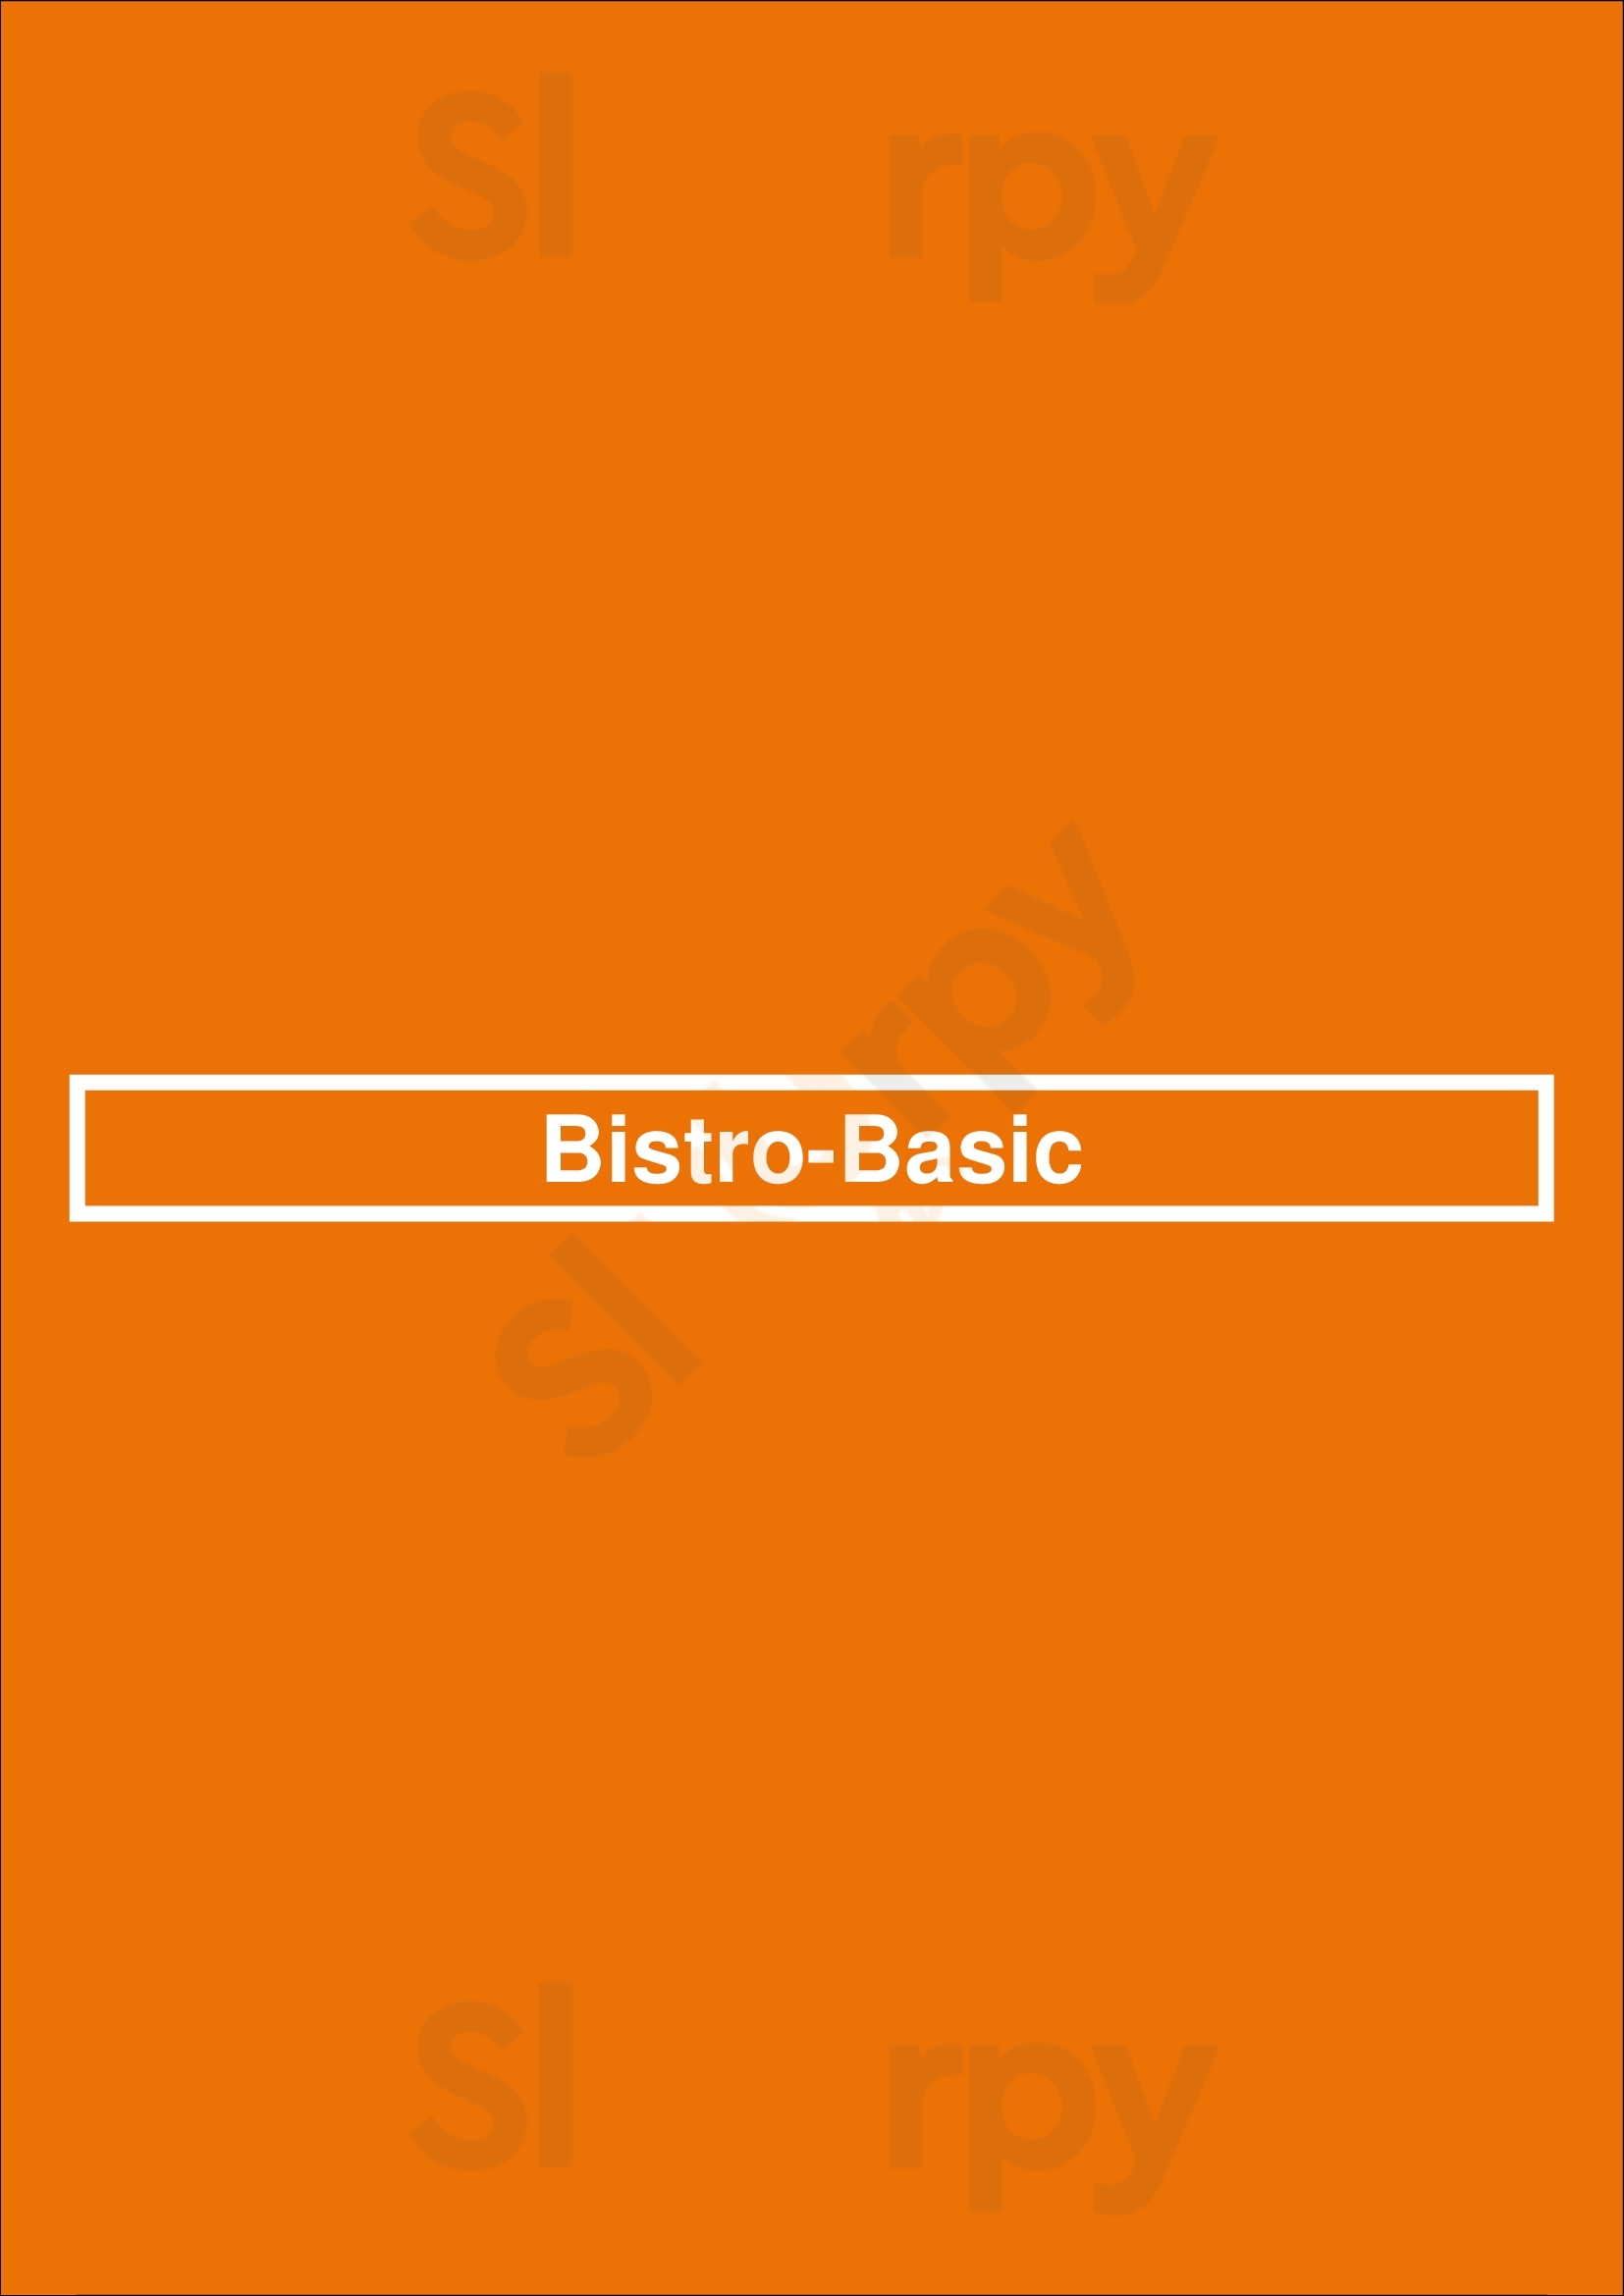 Bistro-basic Papendrecht Menu - 1